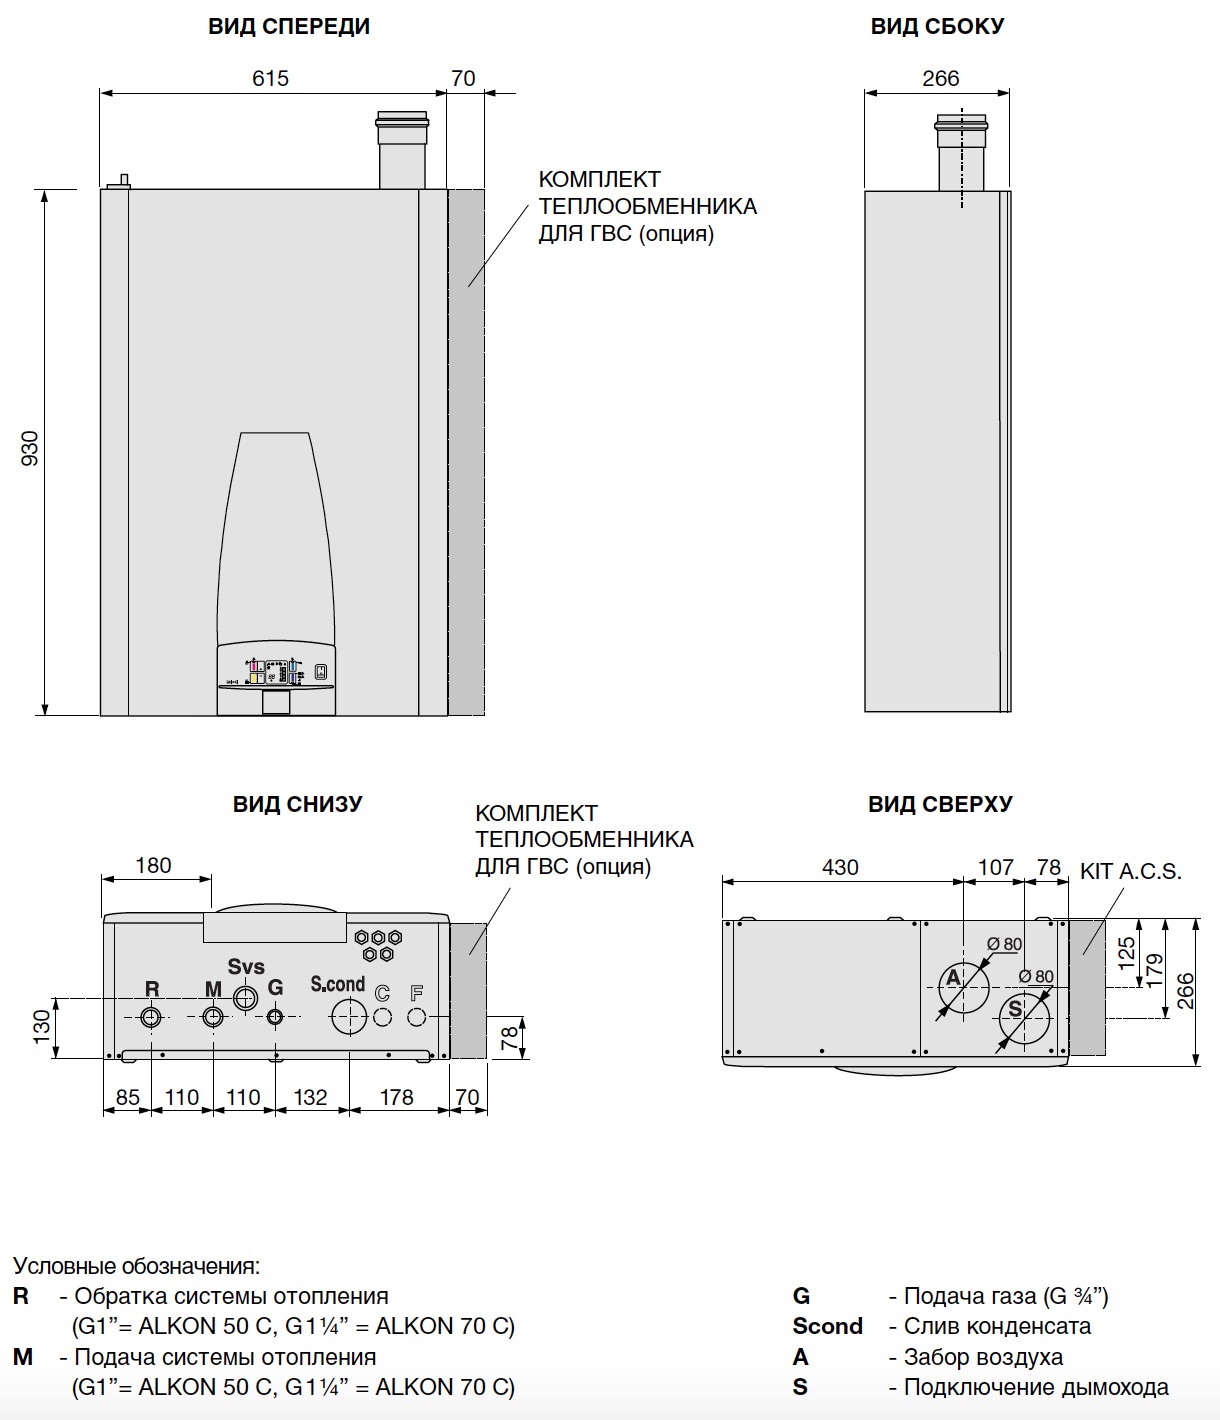 Размеры промышленного конденсационного котла с алюминиевым теплообменником ALKON 50 или 70